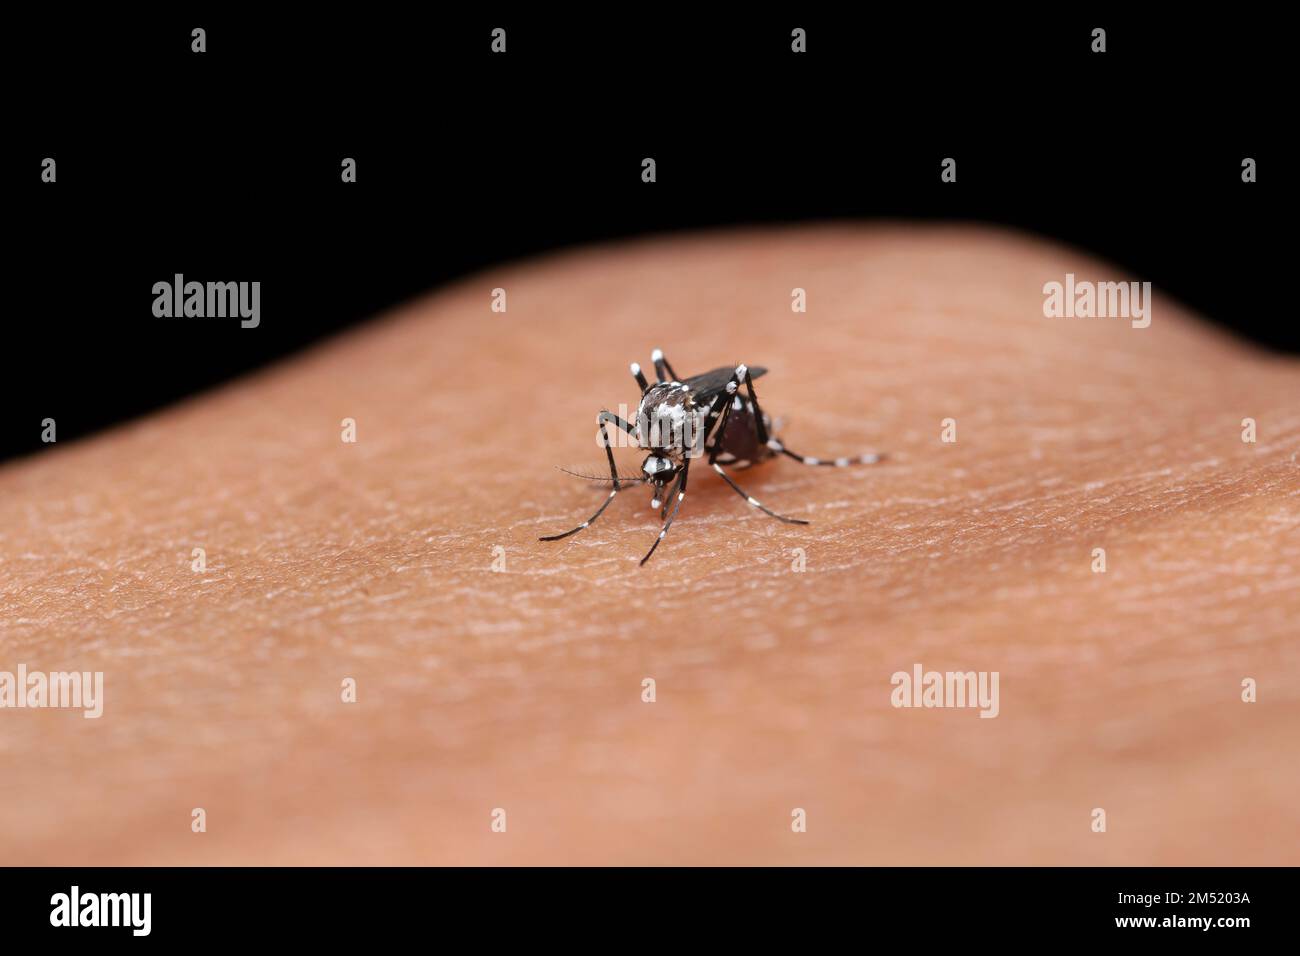 Eine weibliche Dengue-Mücke (Aedes aegypti), die in die Hand beißt Stockfoto